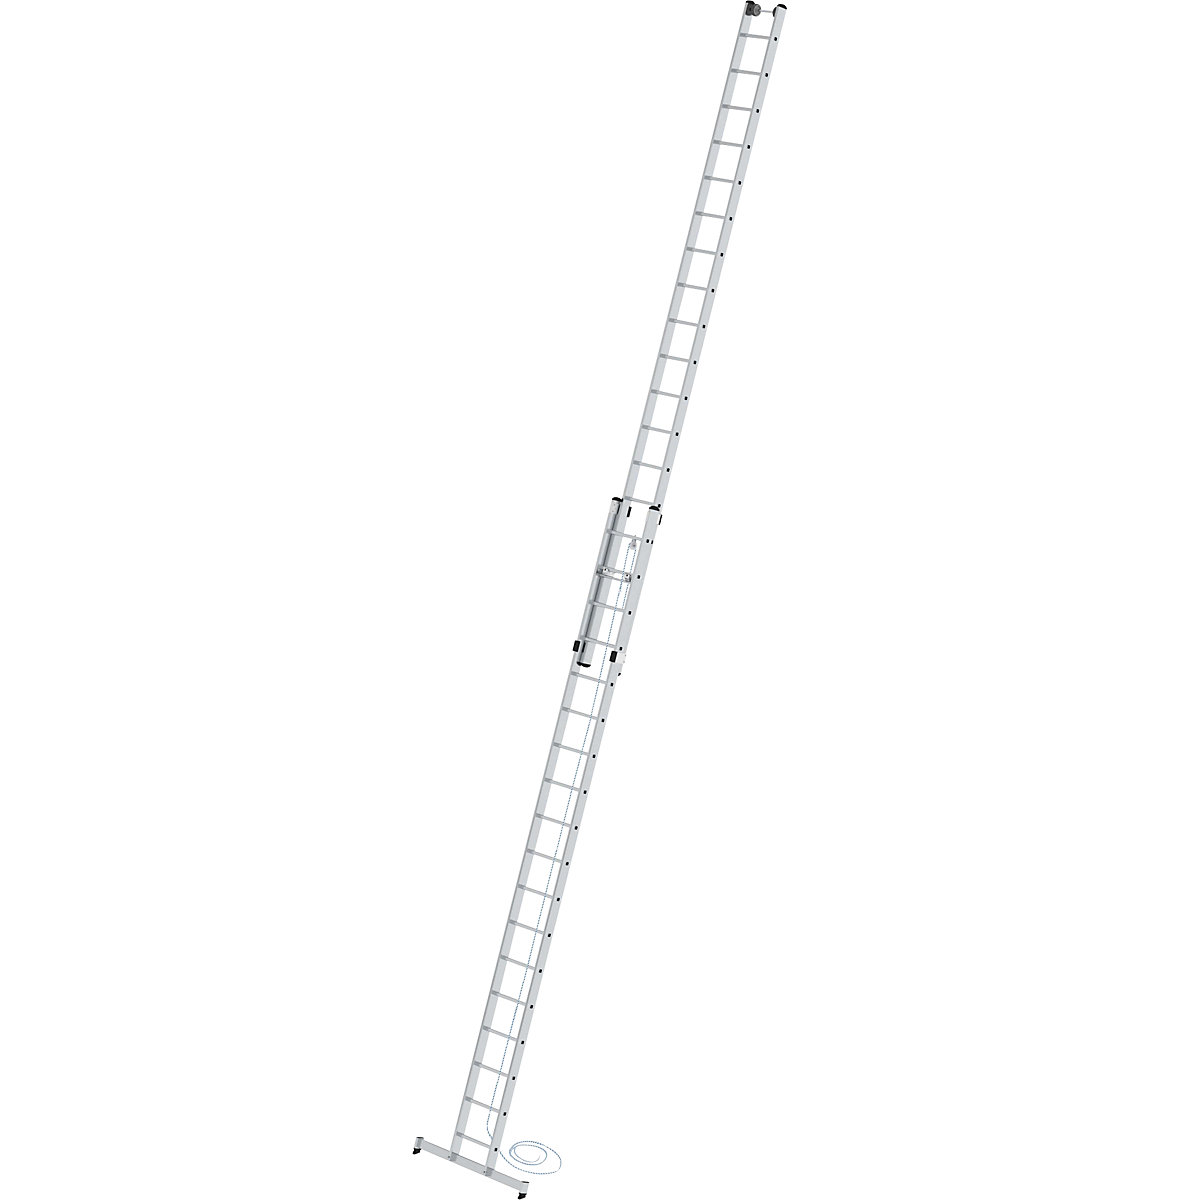 Escalera de mano de altura regulable – MUNK, escalera con cable, de 2 tramos con traviesa nivello®, 2 x 18 peldaños-5